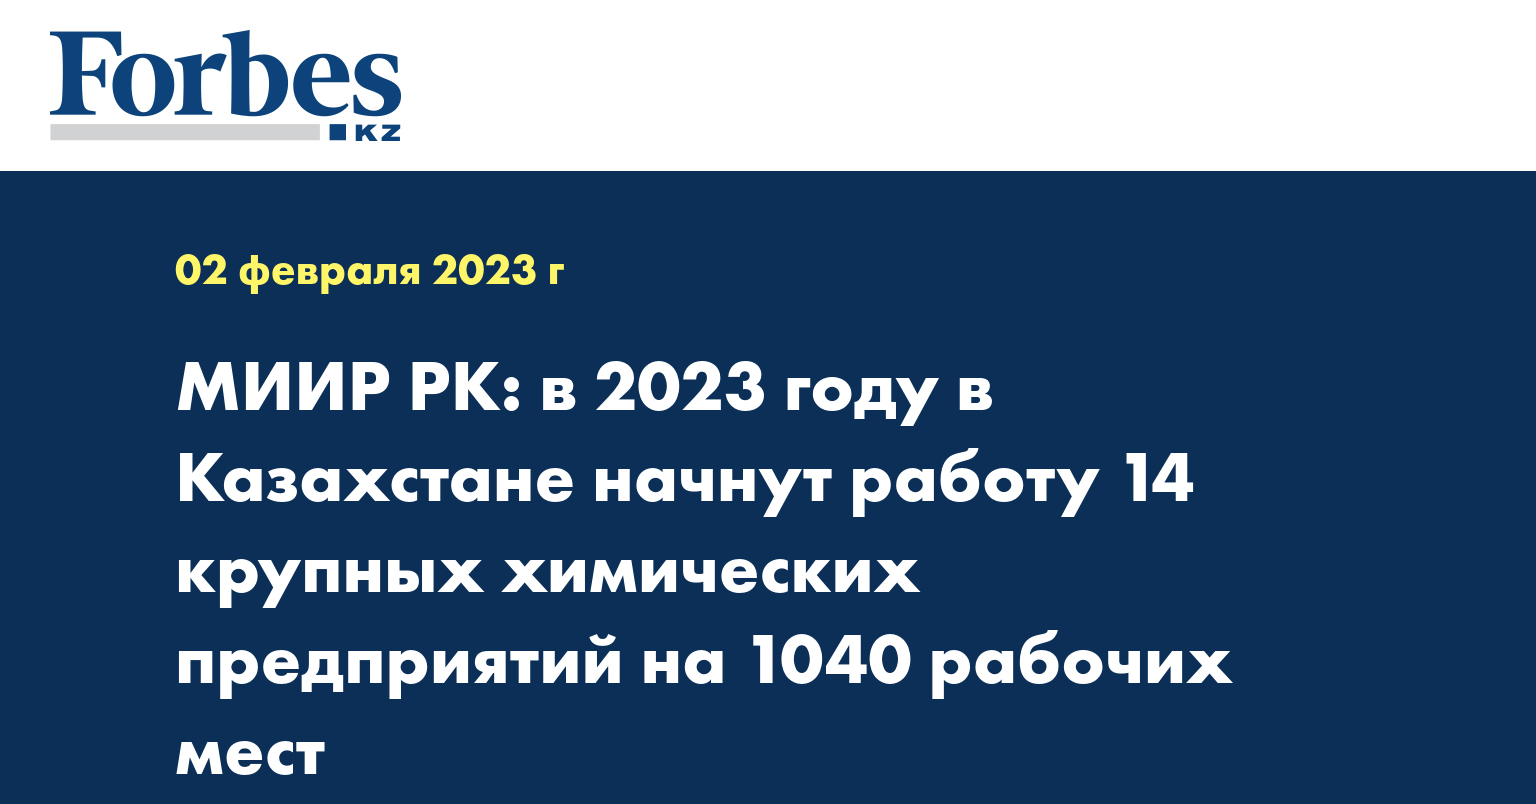 МИИР РК: в 2023 году в Казахстане начнут работу 14 крупных химических предприятий на 1040 рабочих мест